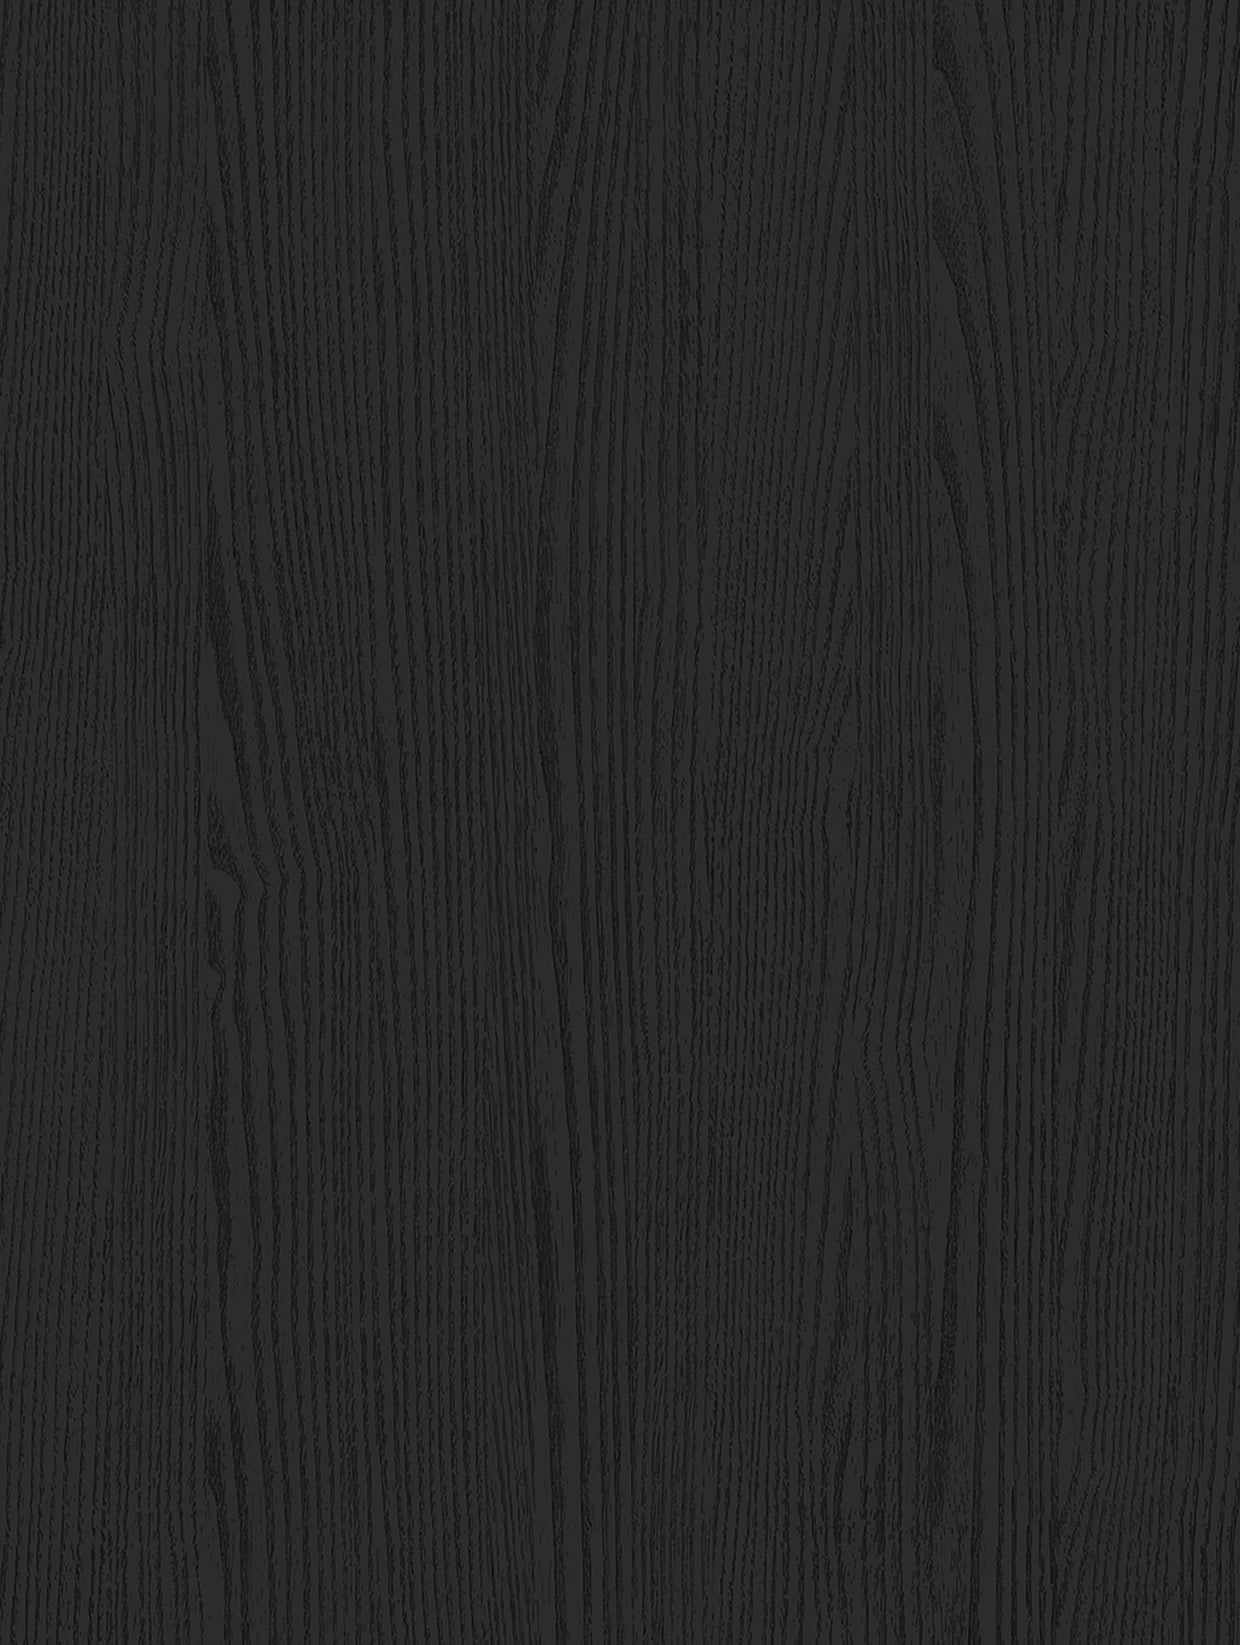 Wood-Painted | Holzdekor Lackiert Soft/Strukturiert - Möbelfolie Selbstklebende Tapete Vinyl Folie für Möbel Wand Regal (100x122cm)